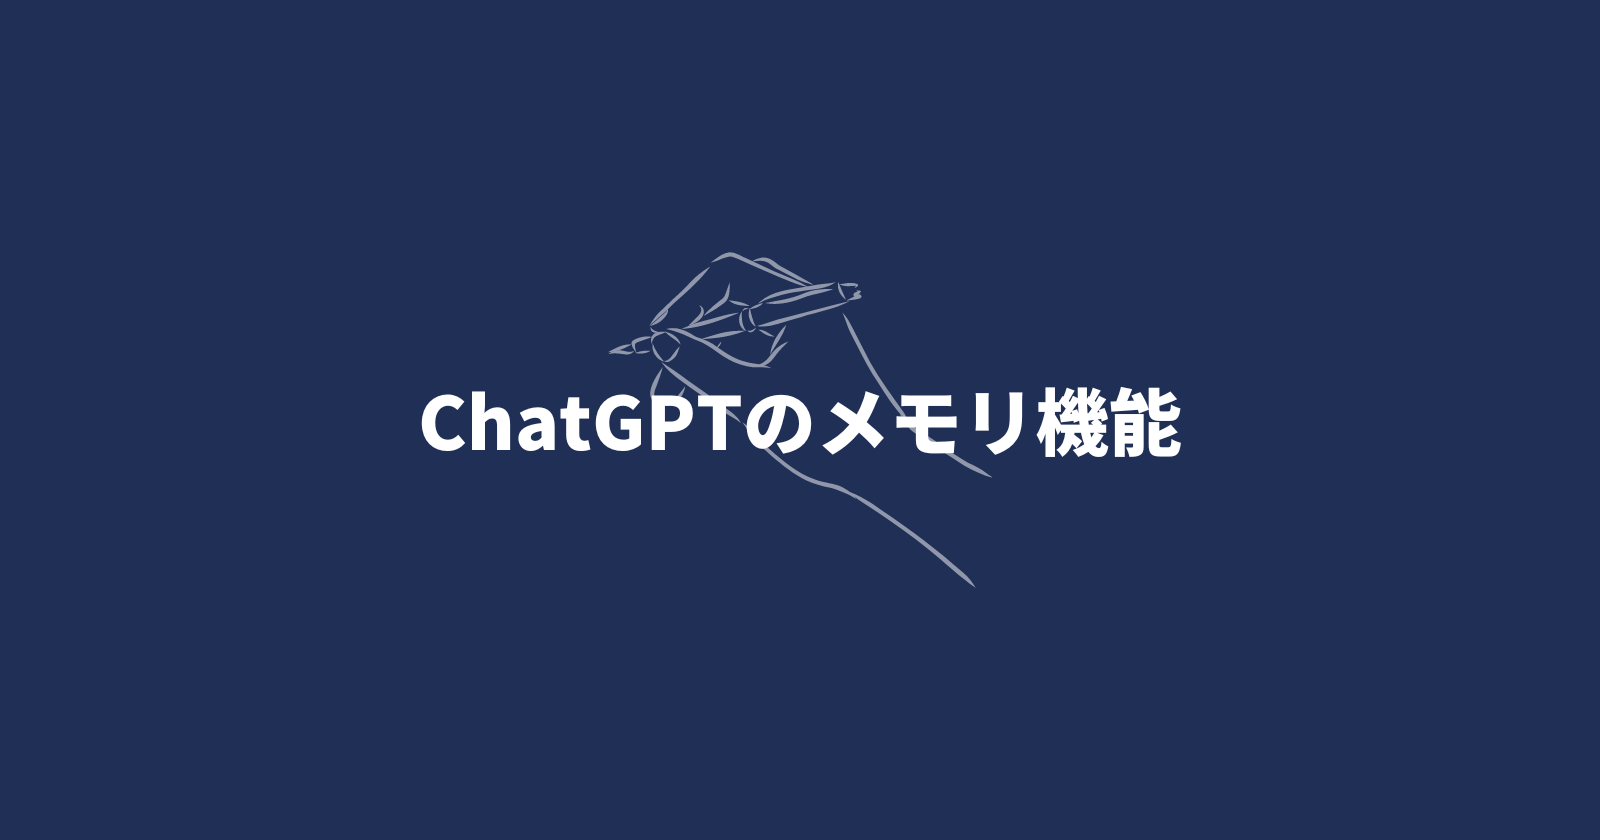 ChatGPTのメモリ機能の使い方や活用方法、削除方法